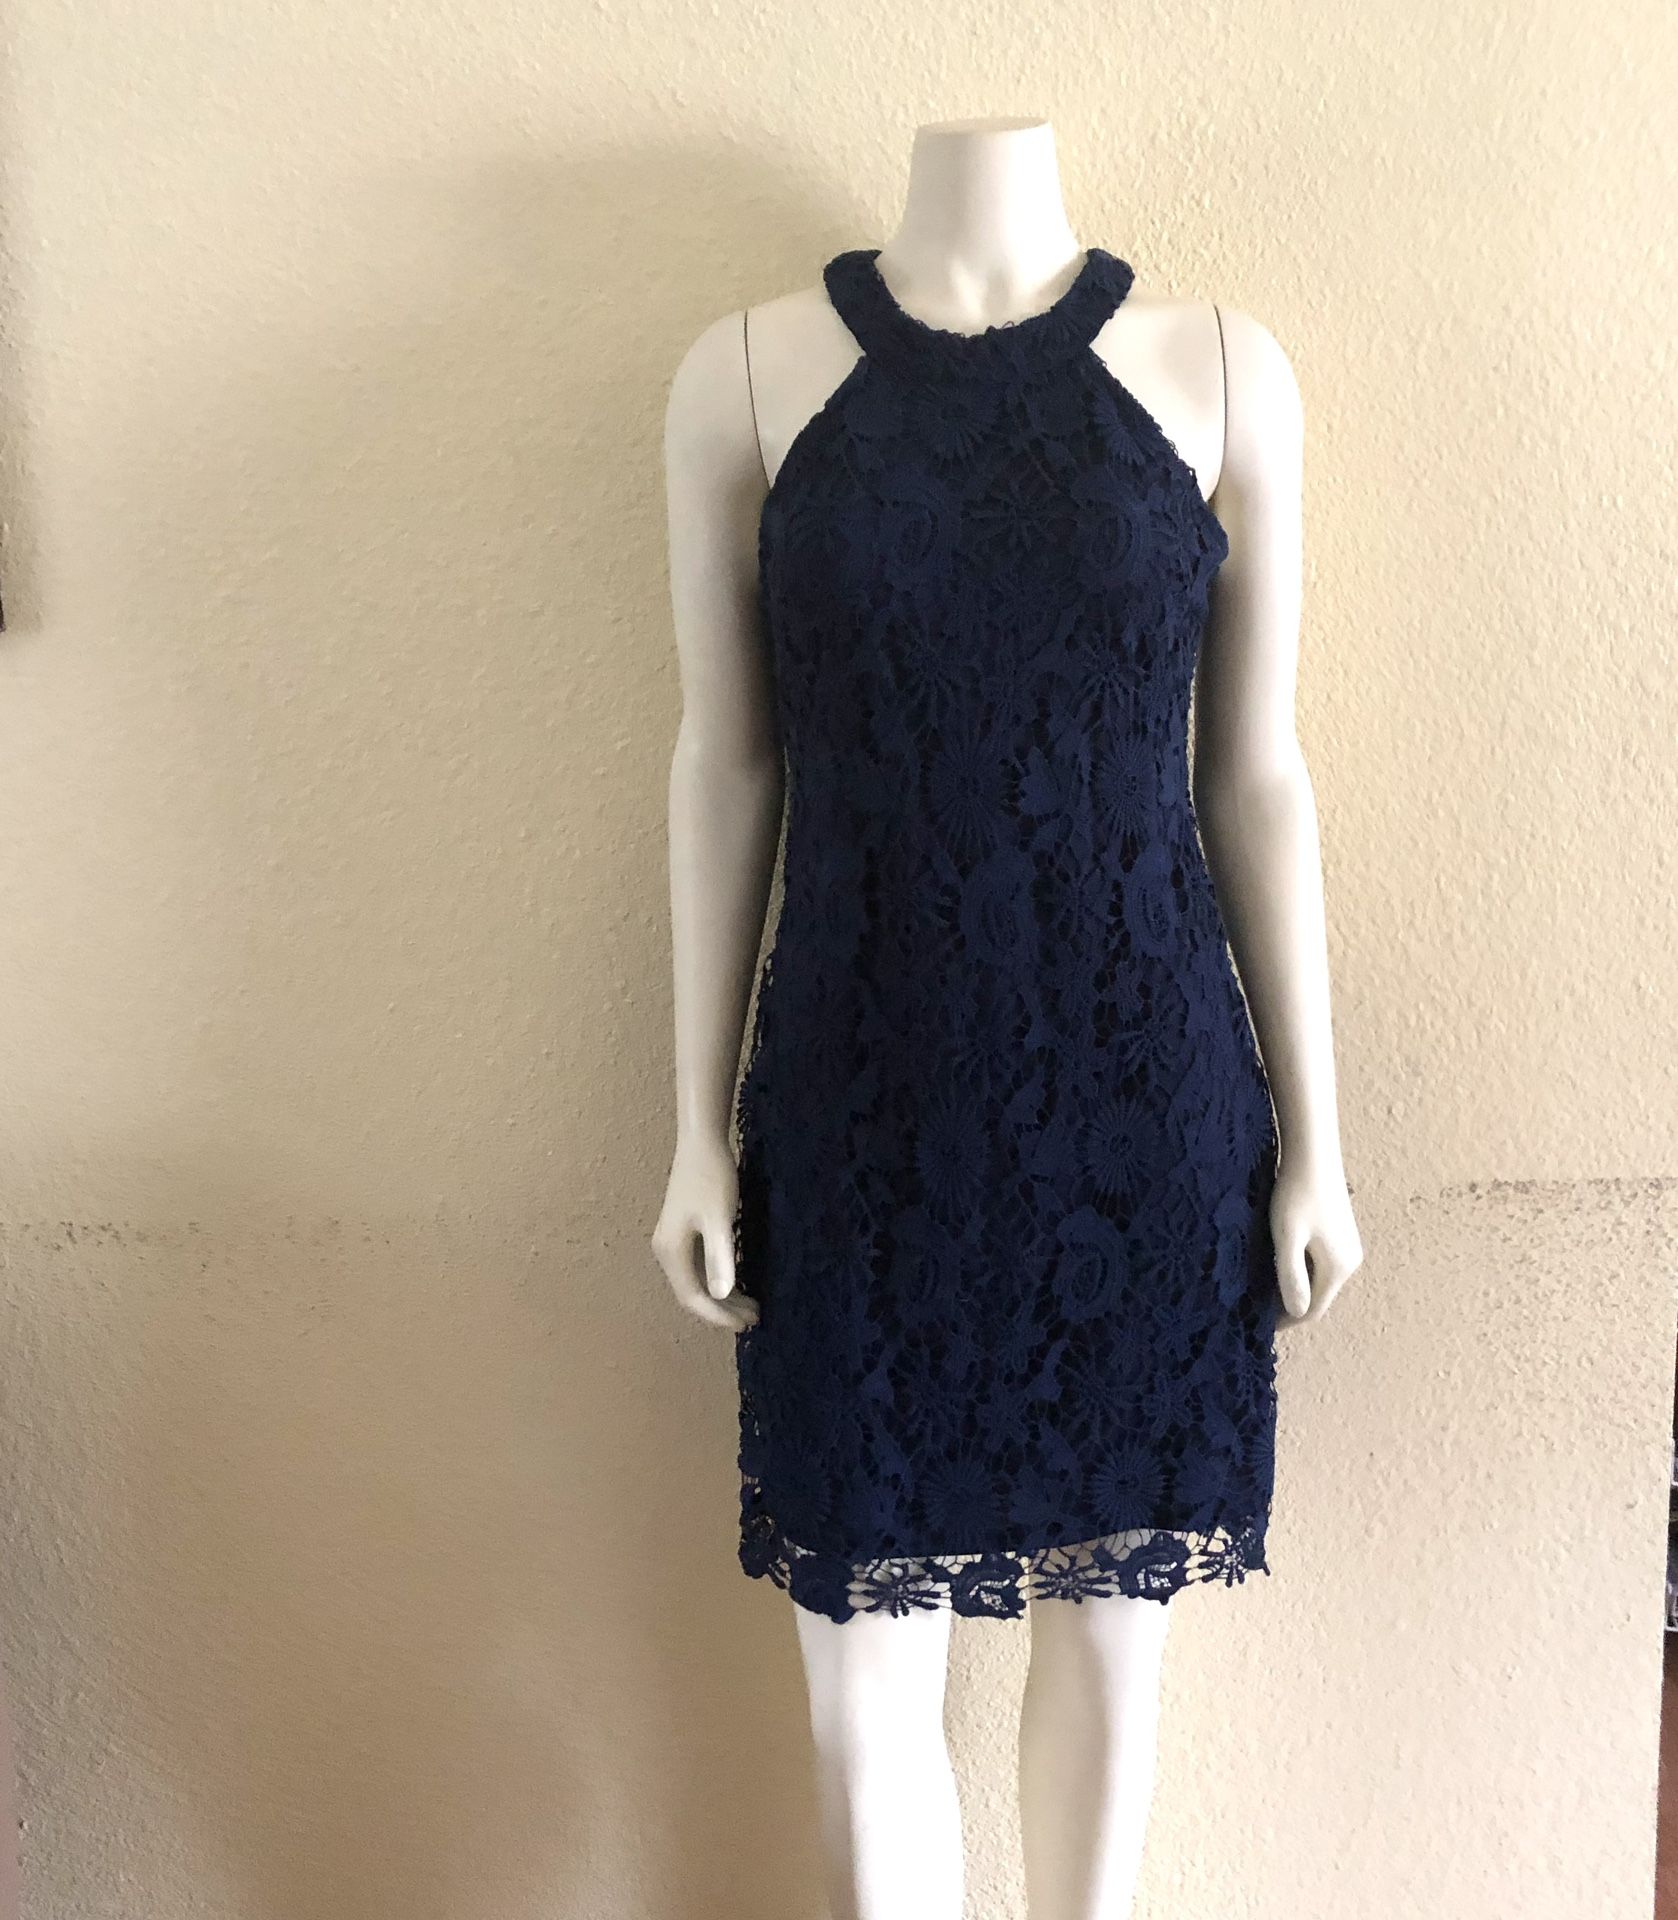 Berydress Navy Blue lace halter dress size L